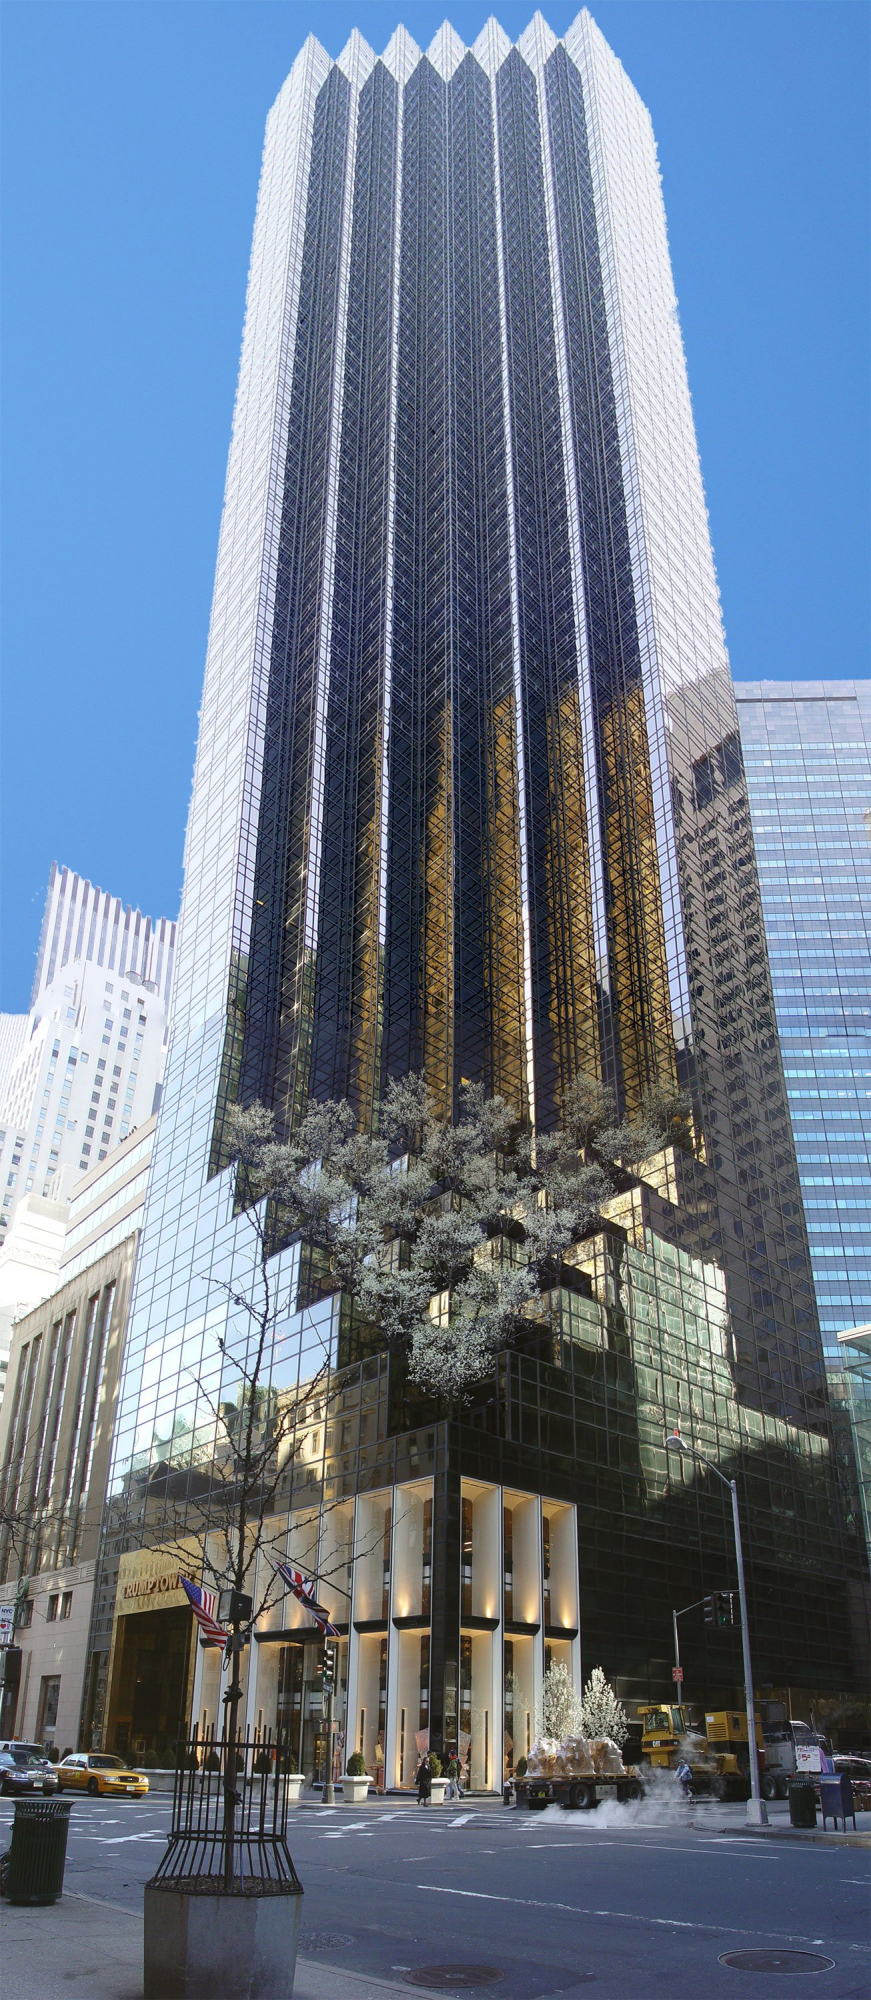 La torre donde está situado el apartamento es una de las más altas del mundo, con 262 metros y 72 pisos.